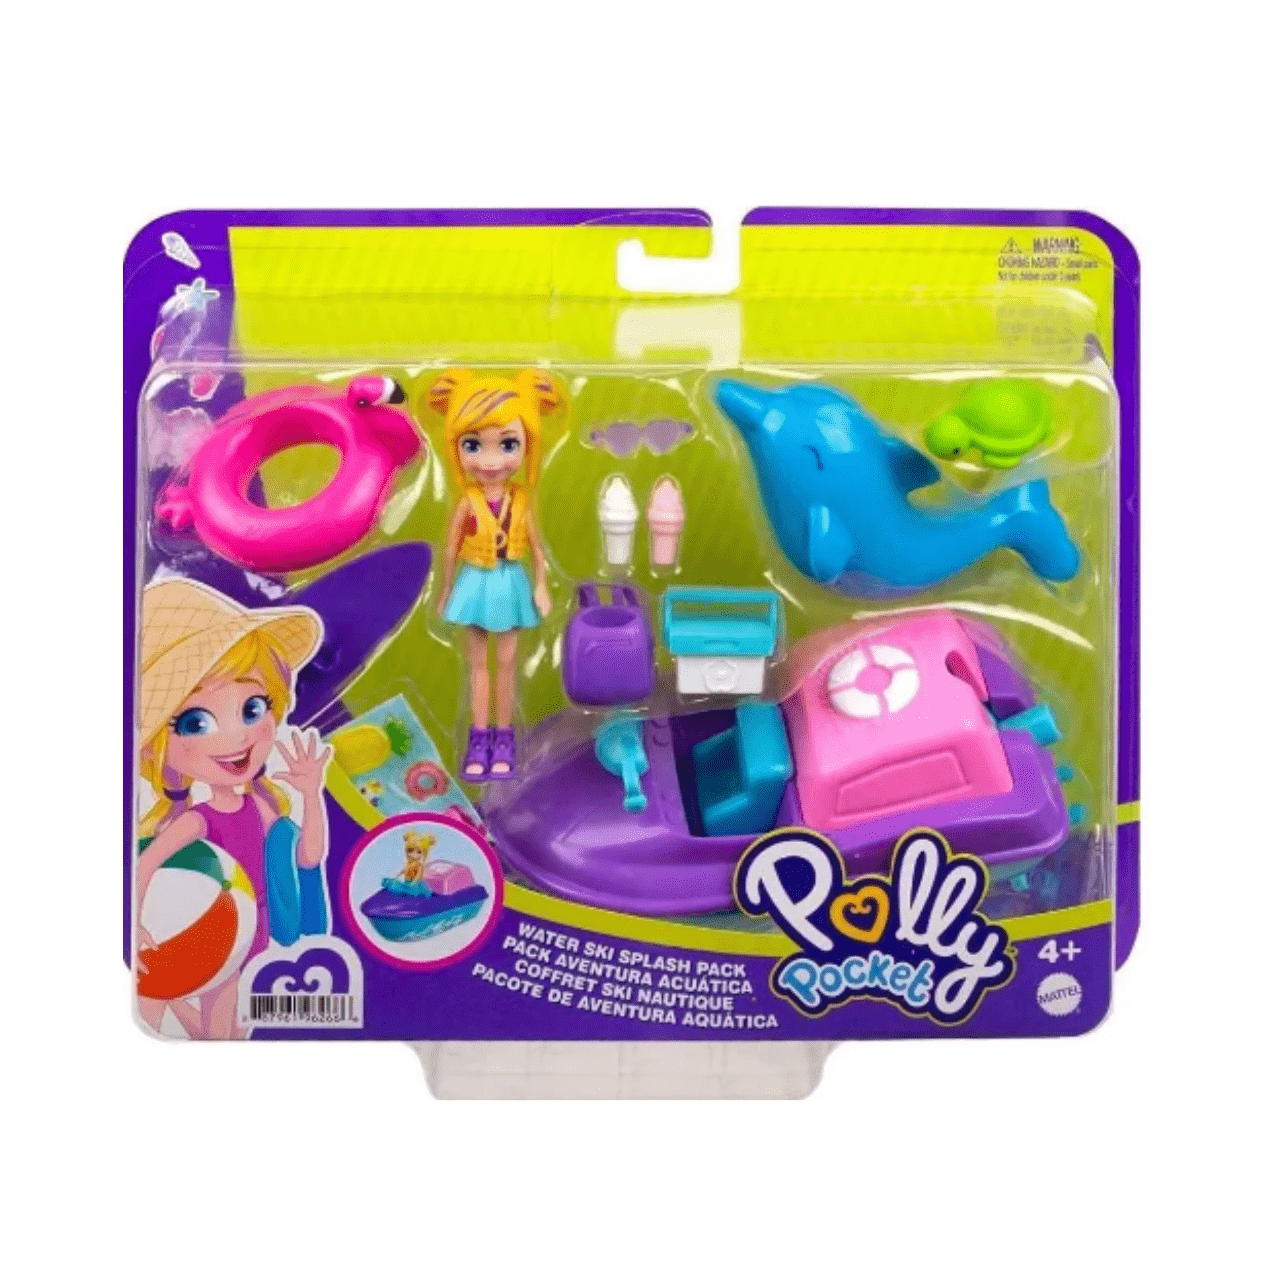 Playset Polly Pocket com Mini Bonecas - Boutique de Moda - Mattel